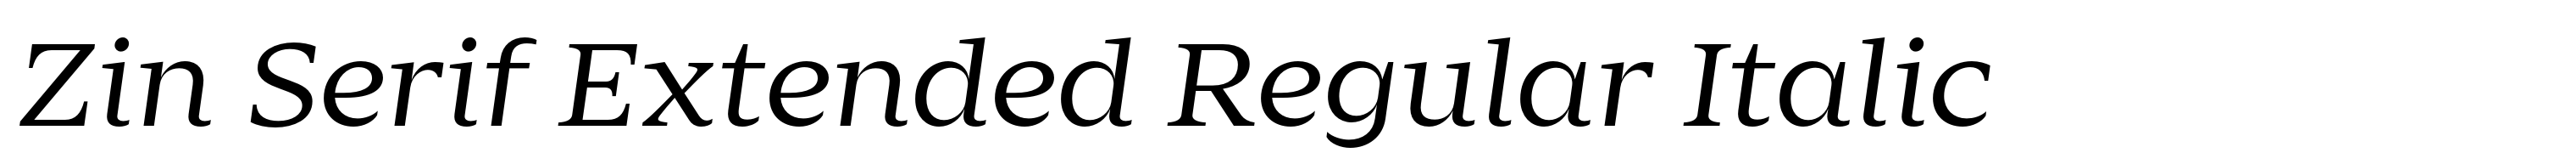 Zin Serif Extended Regular Italic